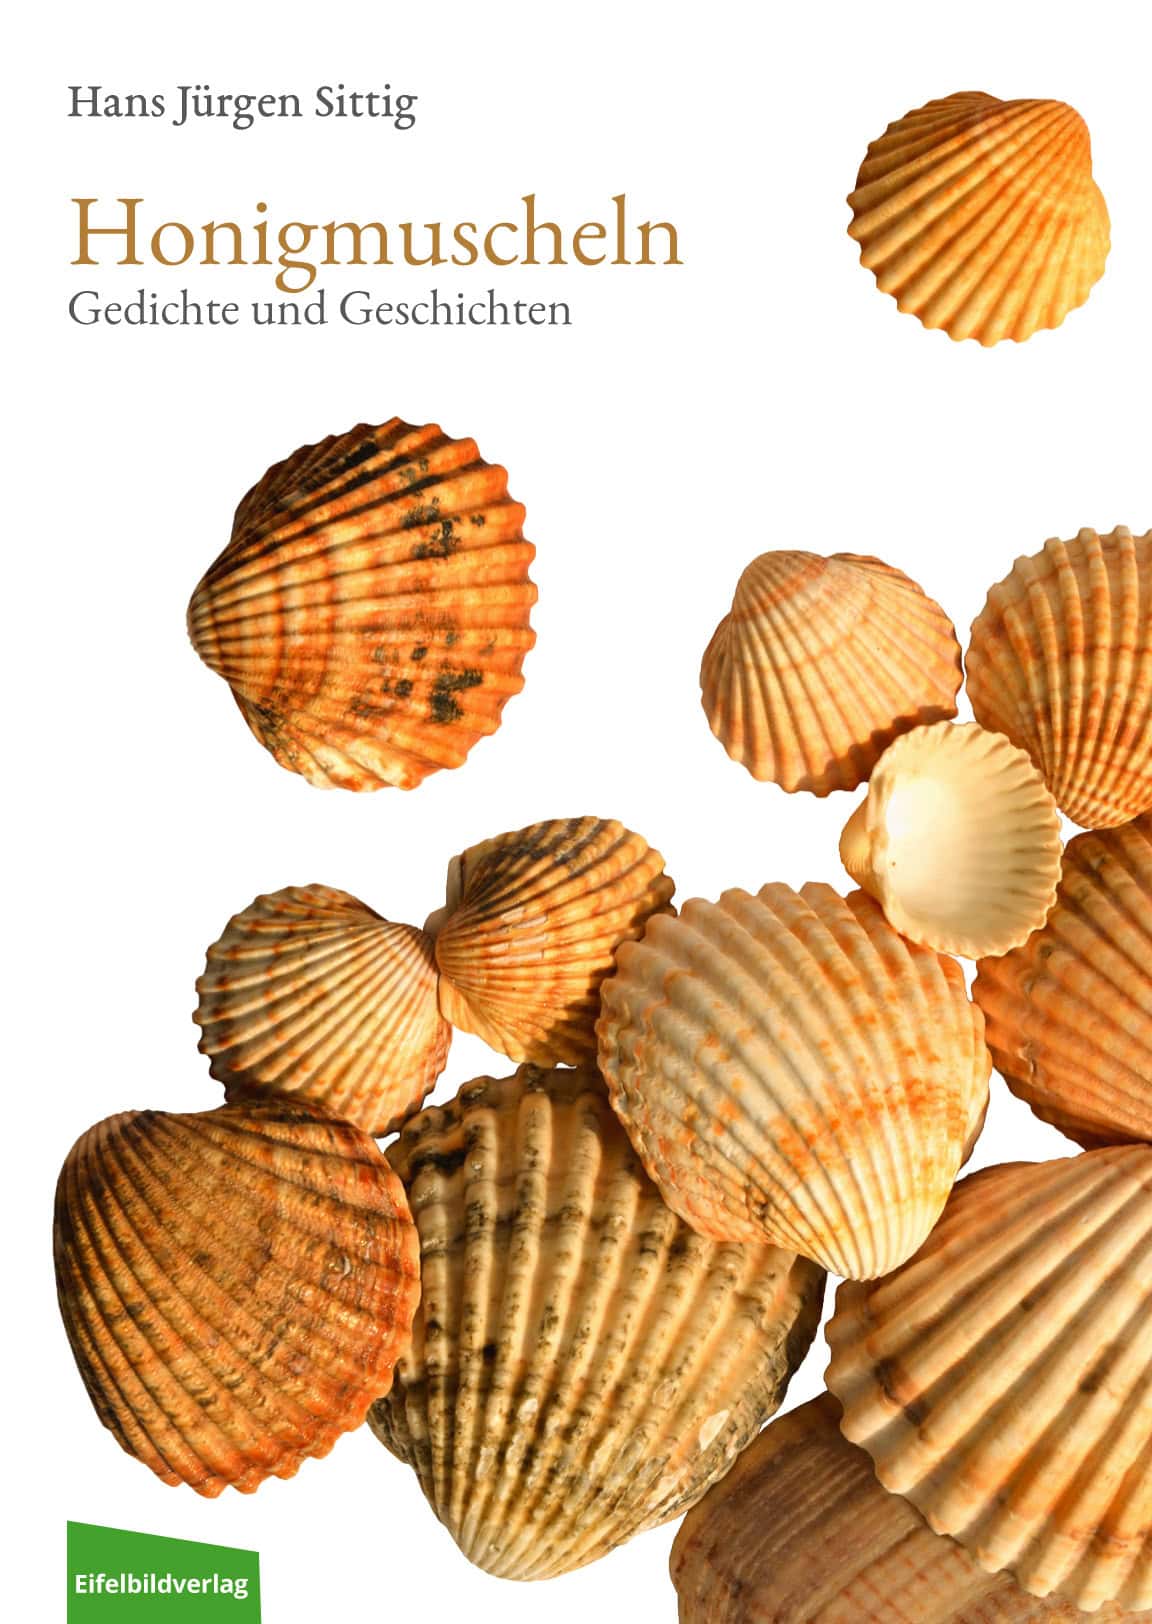 2015-Honigmuscheln-– Hans-Juergen-Sittig-Cover-sRGB